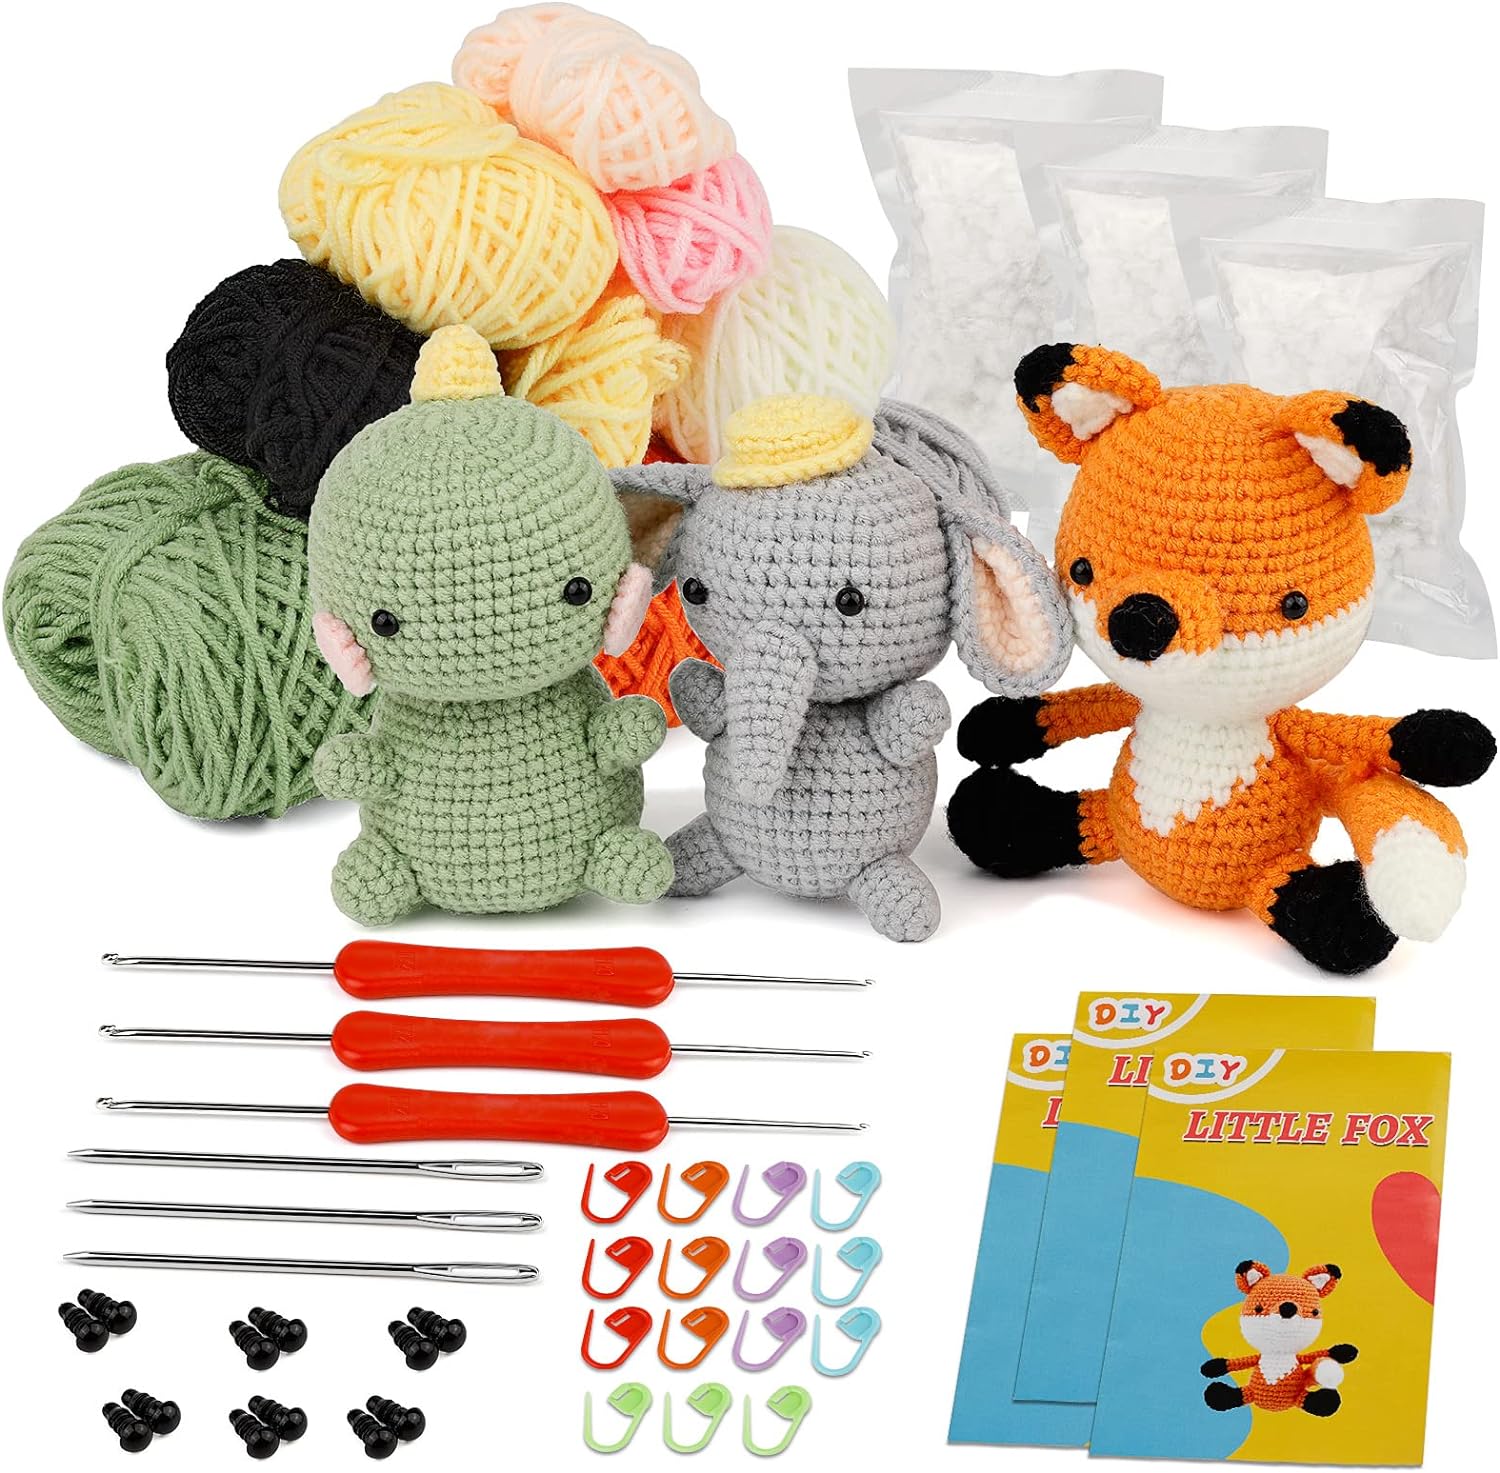 Crochet Kit Beginners Crochet Hook Set With Crochet Yarn, 58PCS